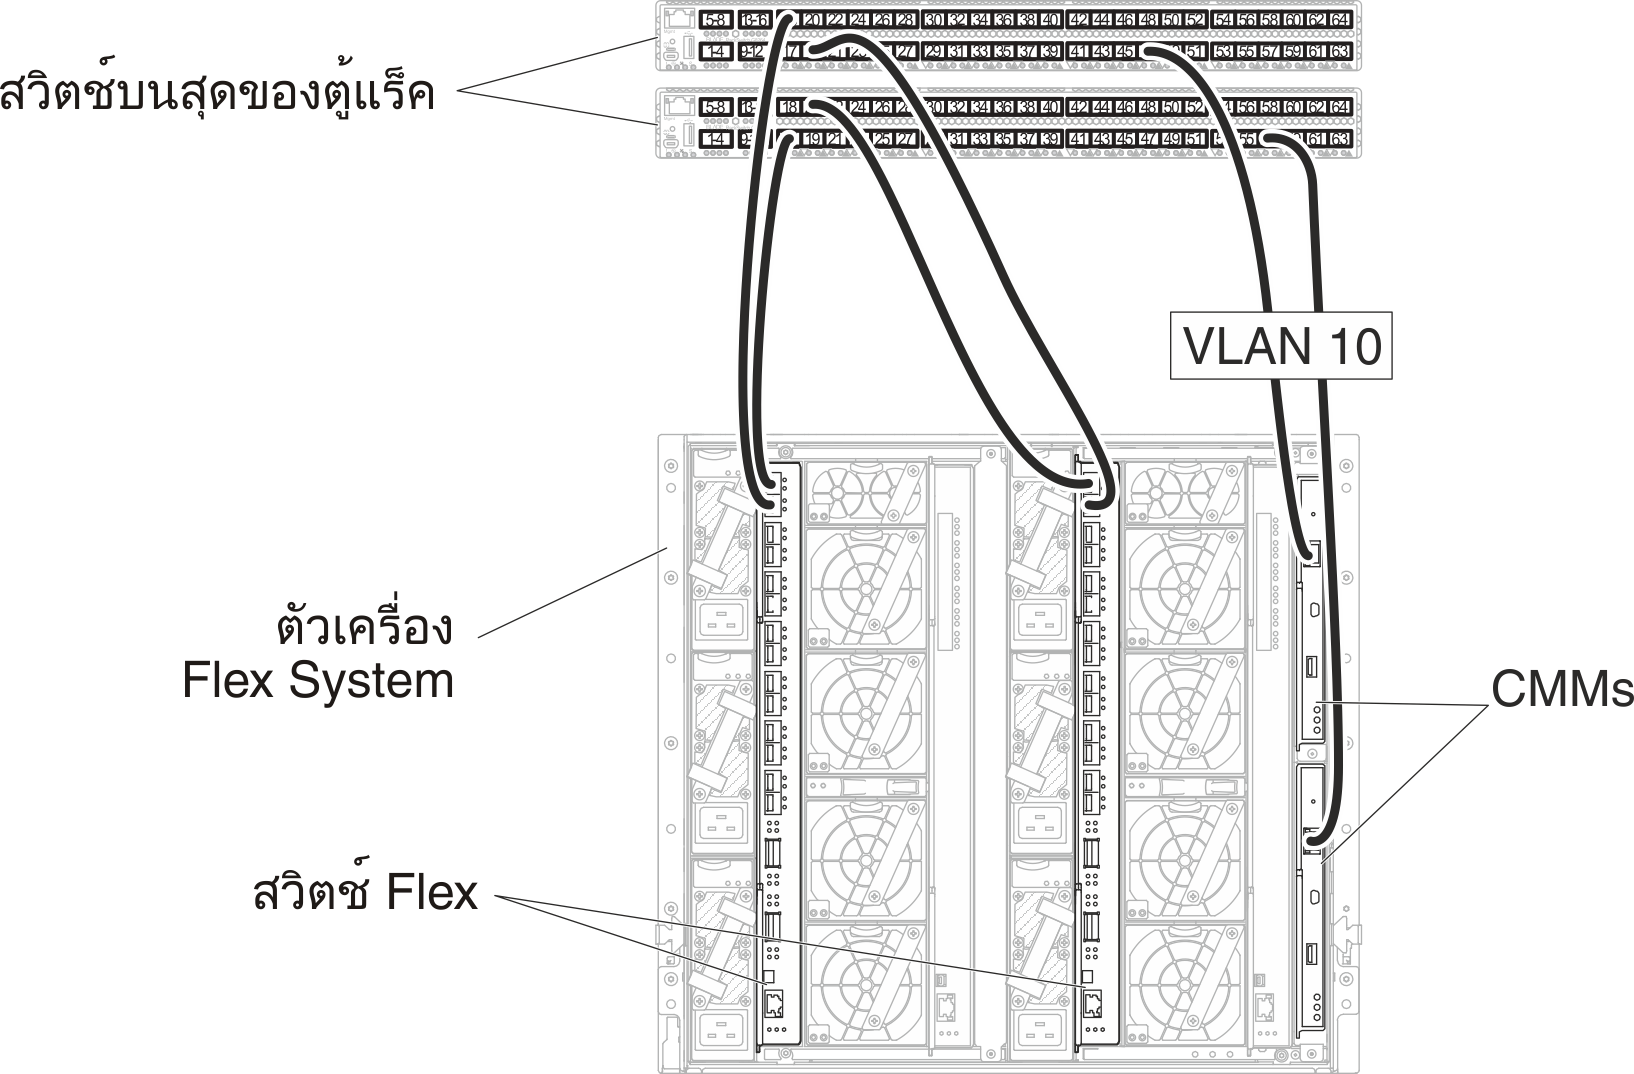 แสดงการกำหนดค่าการแท็ก VLAN ในเครือข่ายการจัดการเท่านั้น